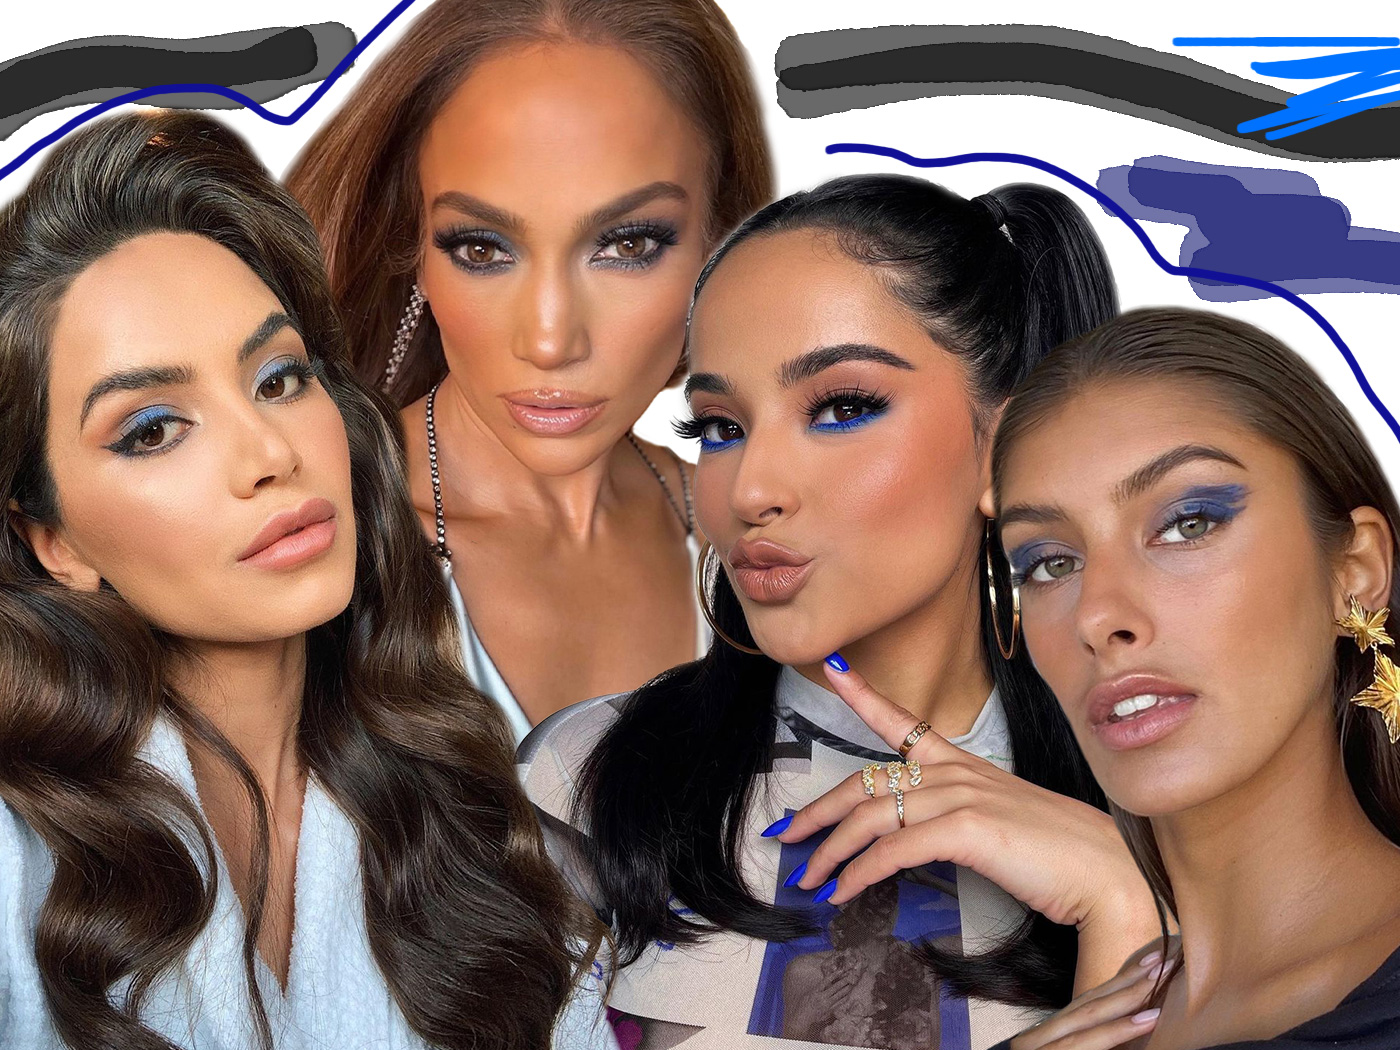 Μπλε σκιά ματιών: Πέντε τρόποι να υιοθετήσεις το αγαπημένο χρώμα των make up artists